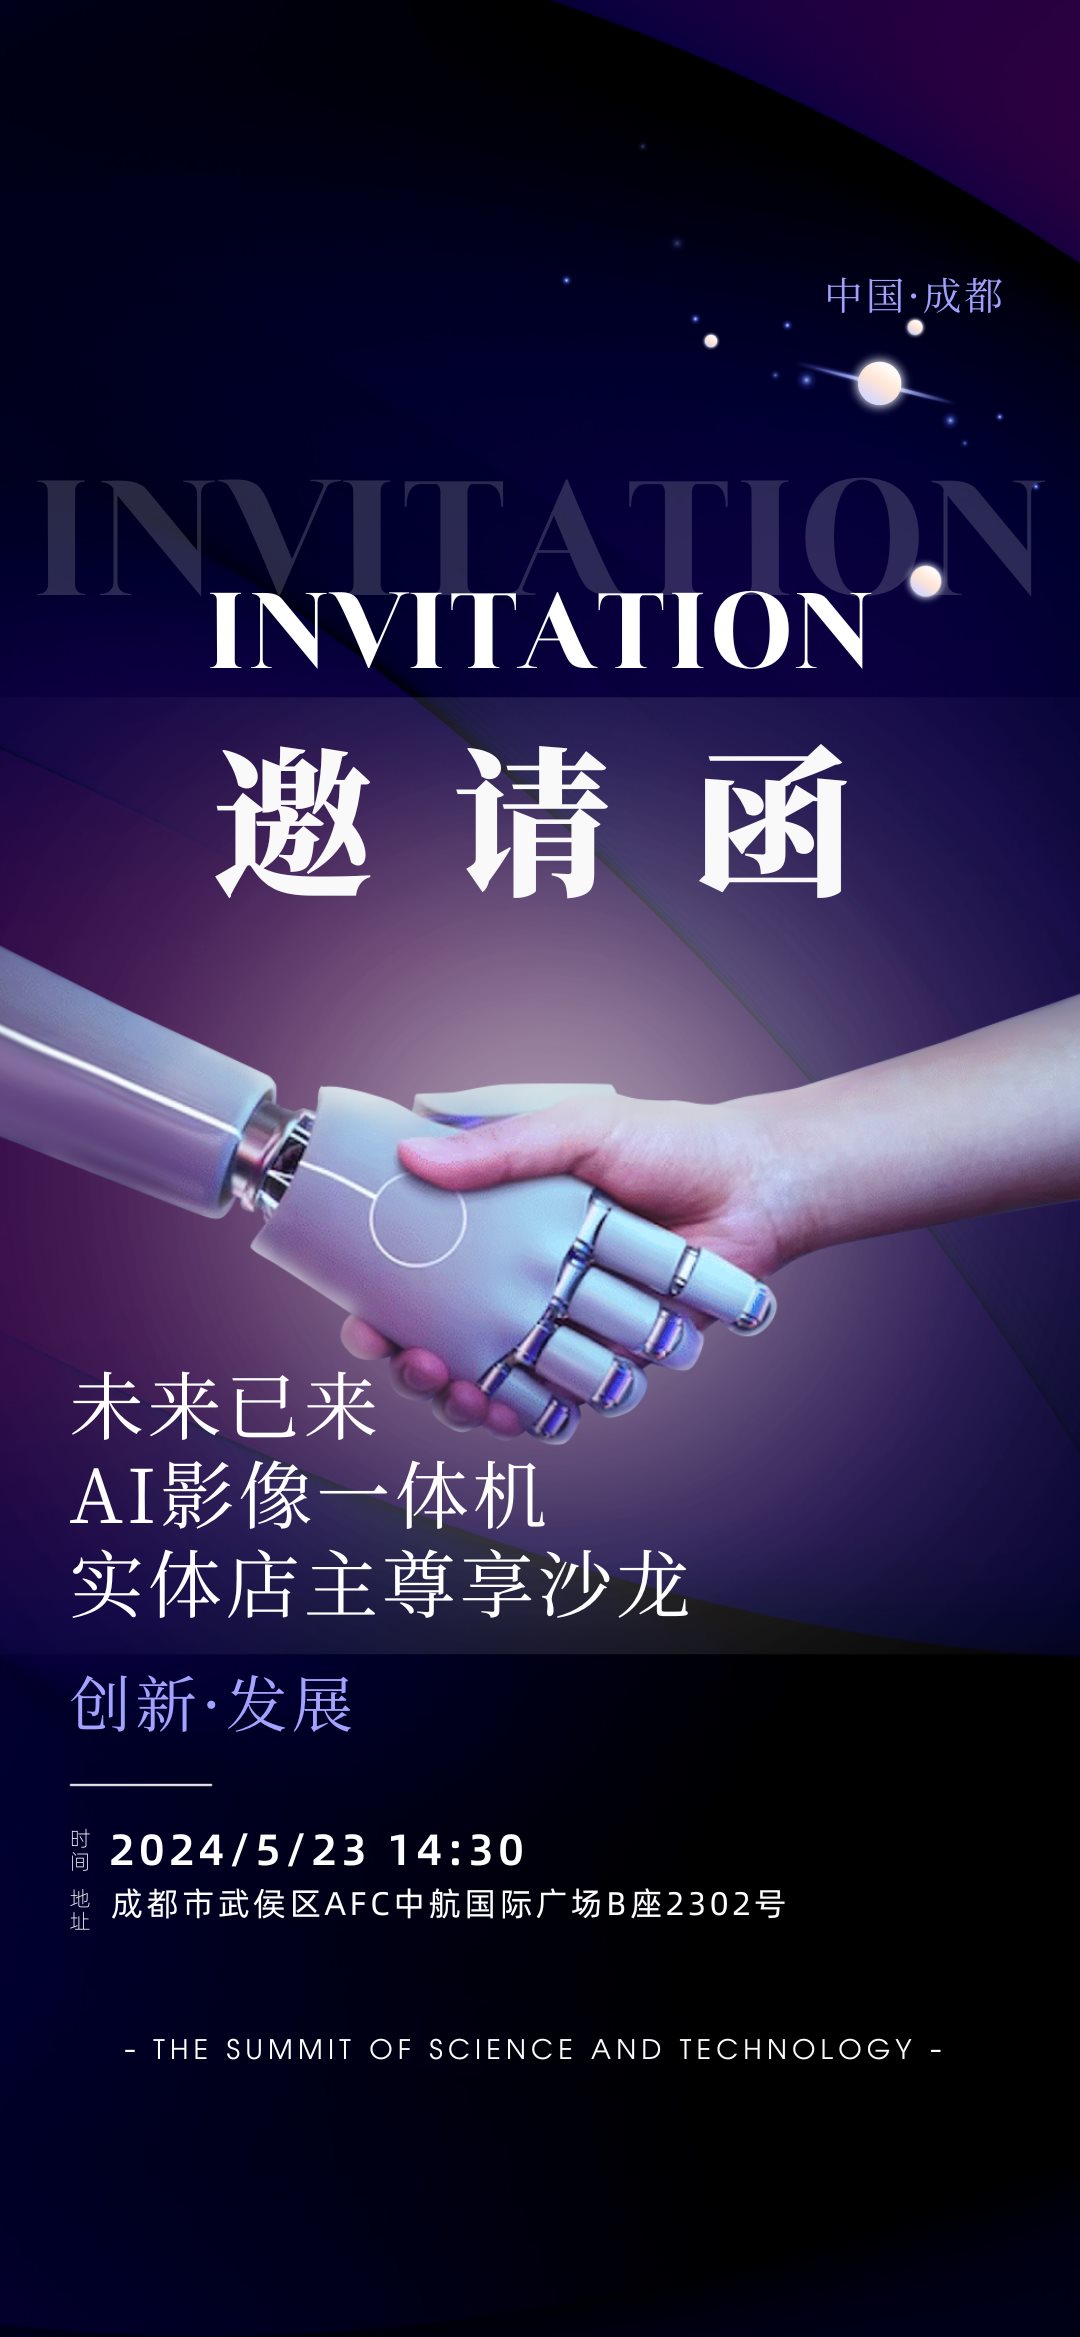 黑紫色人工智能科技峰会手机邀请函2 (1080 x 2337 像素).png